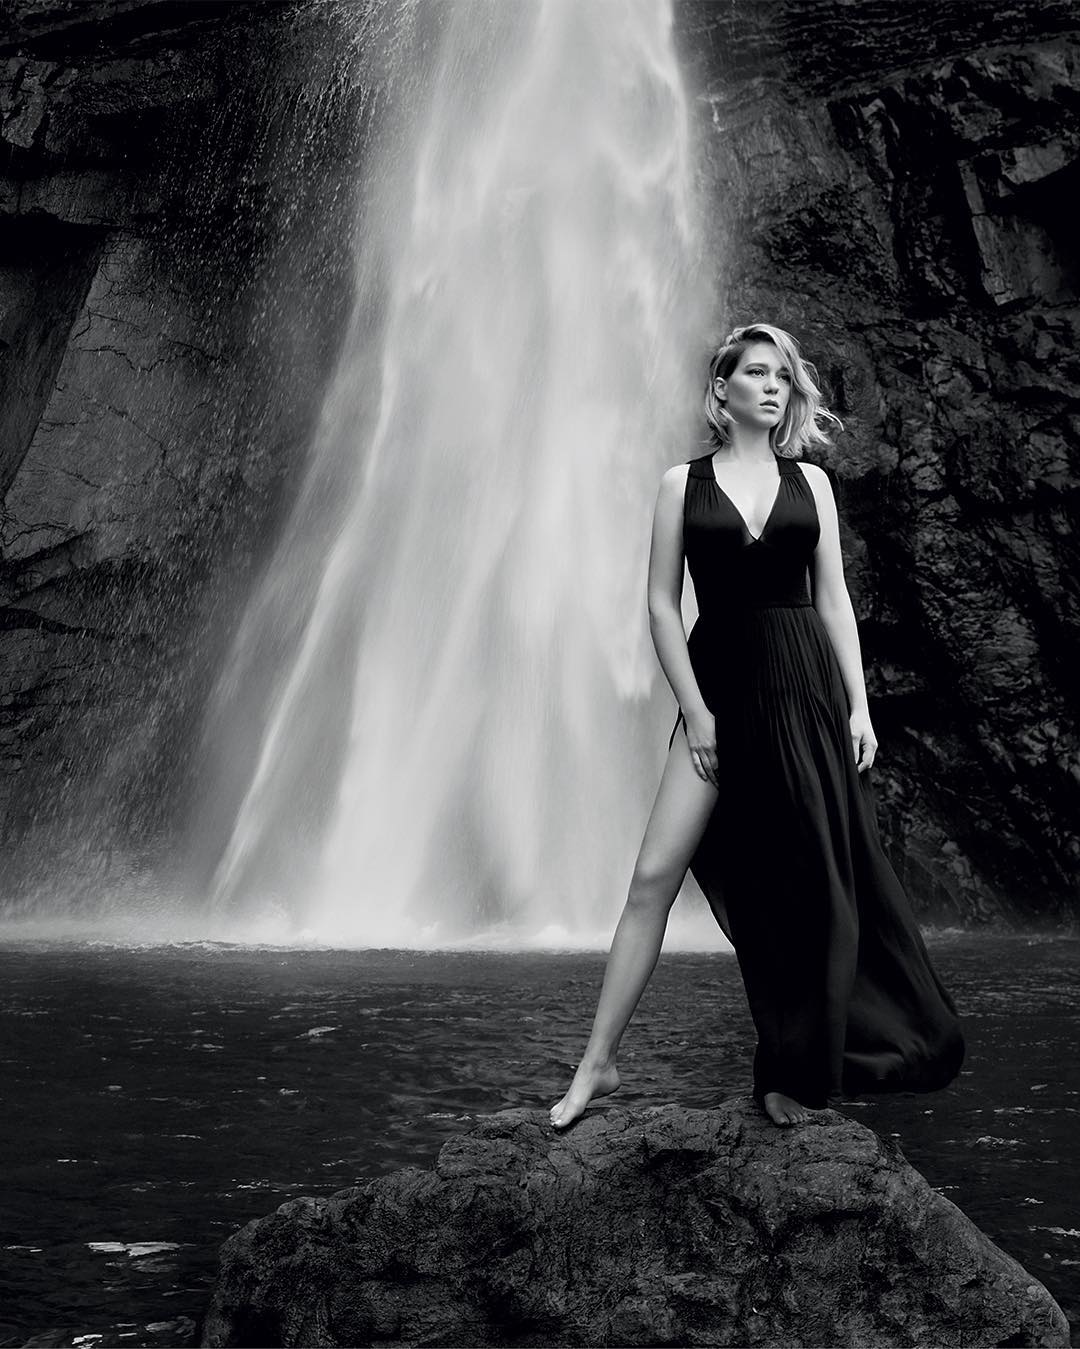 Lea Seydoux Model Women Monochrome Looking Away Black Dress Women Outdoors 1080x1349